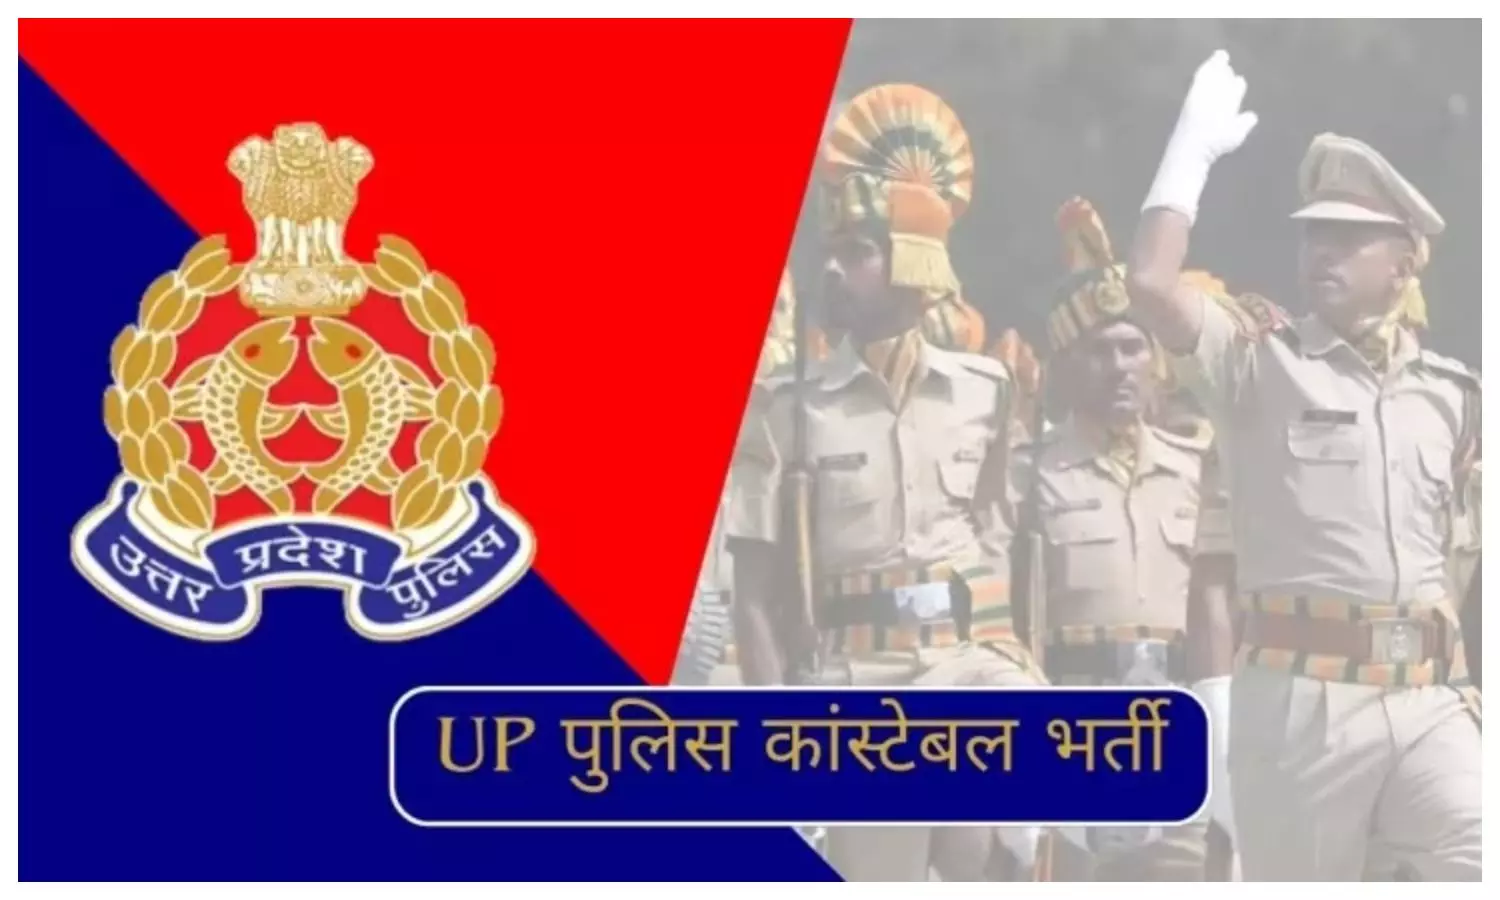 UP Police Constable Exam: पुलिस भर्ती परीक्षा रद्द होने पर झूमे अभ्यर्थी, इको गार्डन में माना जश्न